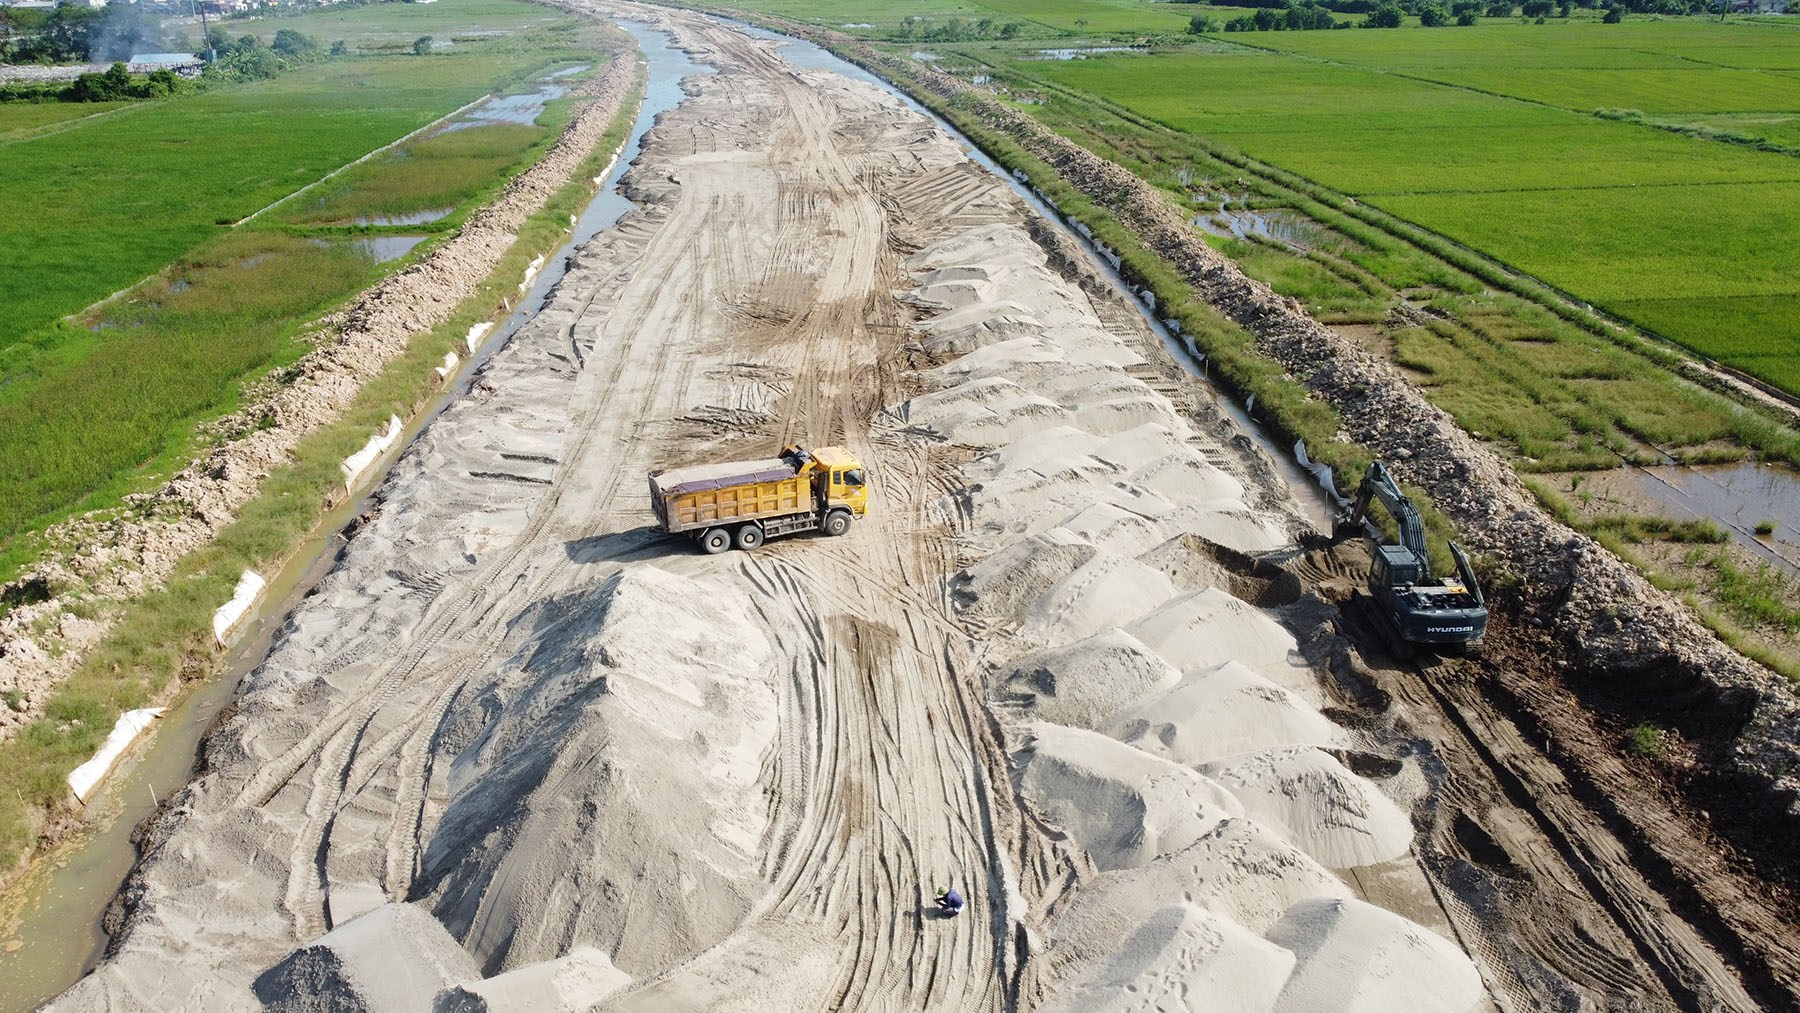 Toàn cảnh đường Nam Định - Lạc Quần - Đường ven biển qua huyện Nam Trực đang xây dựng